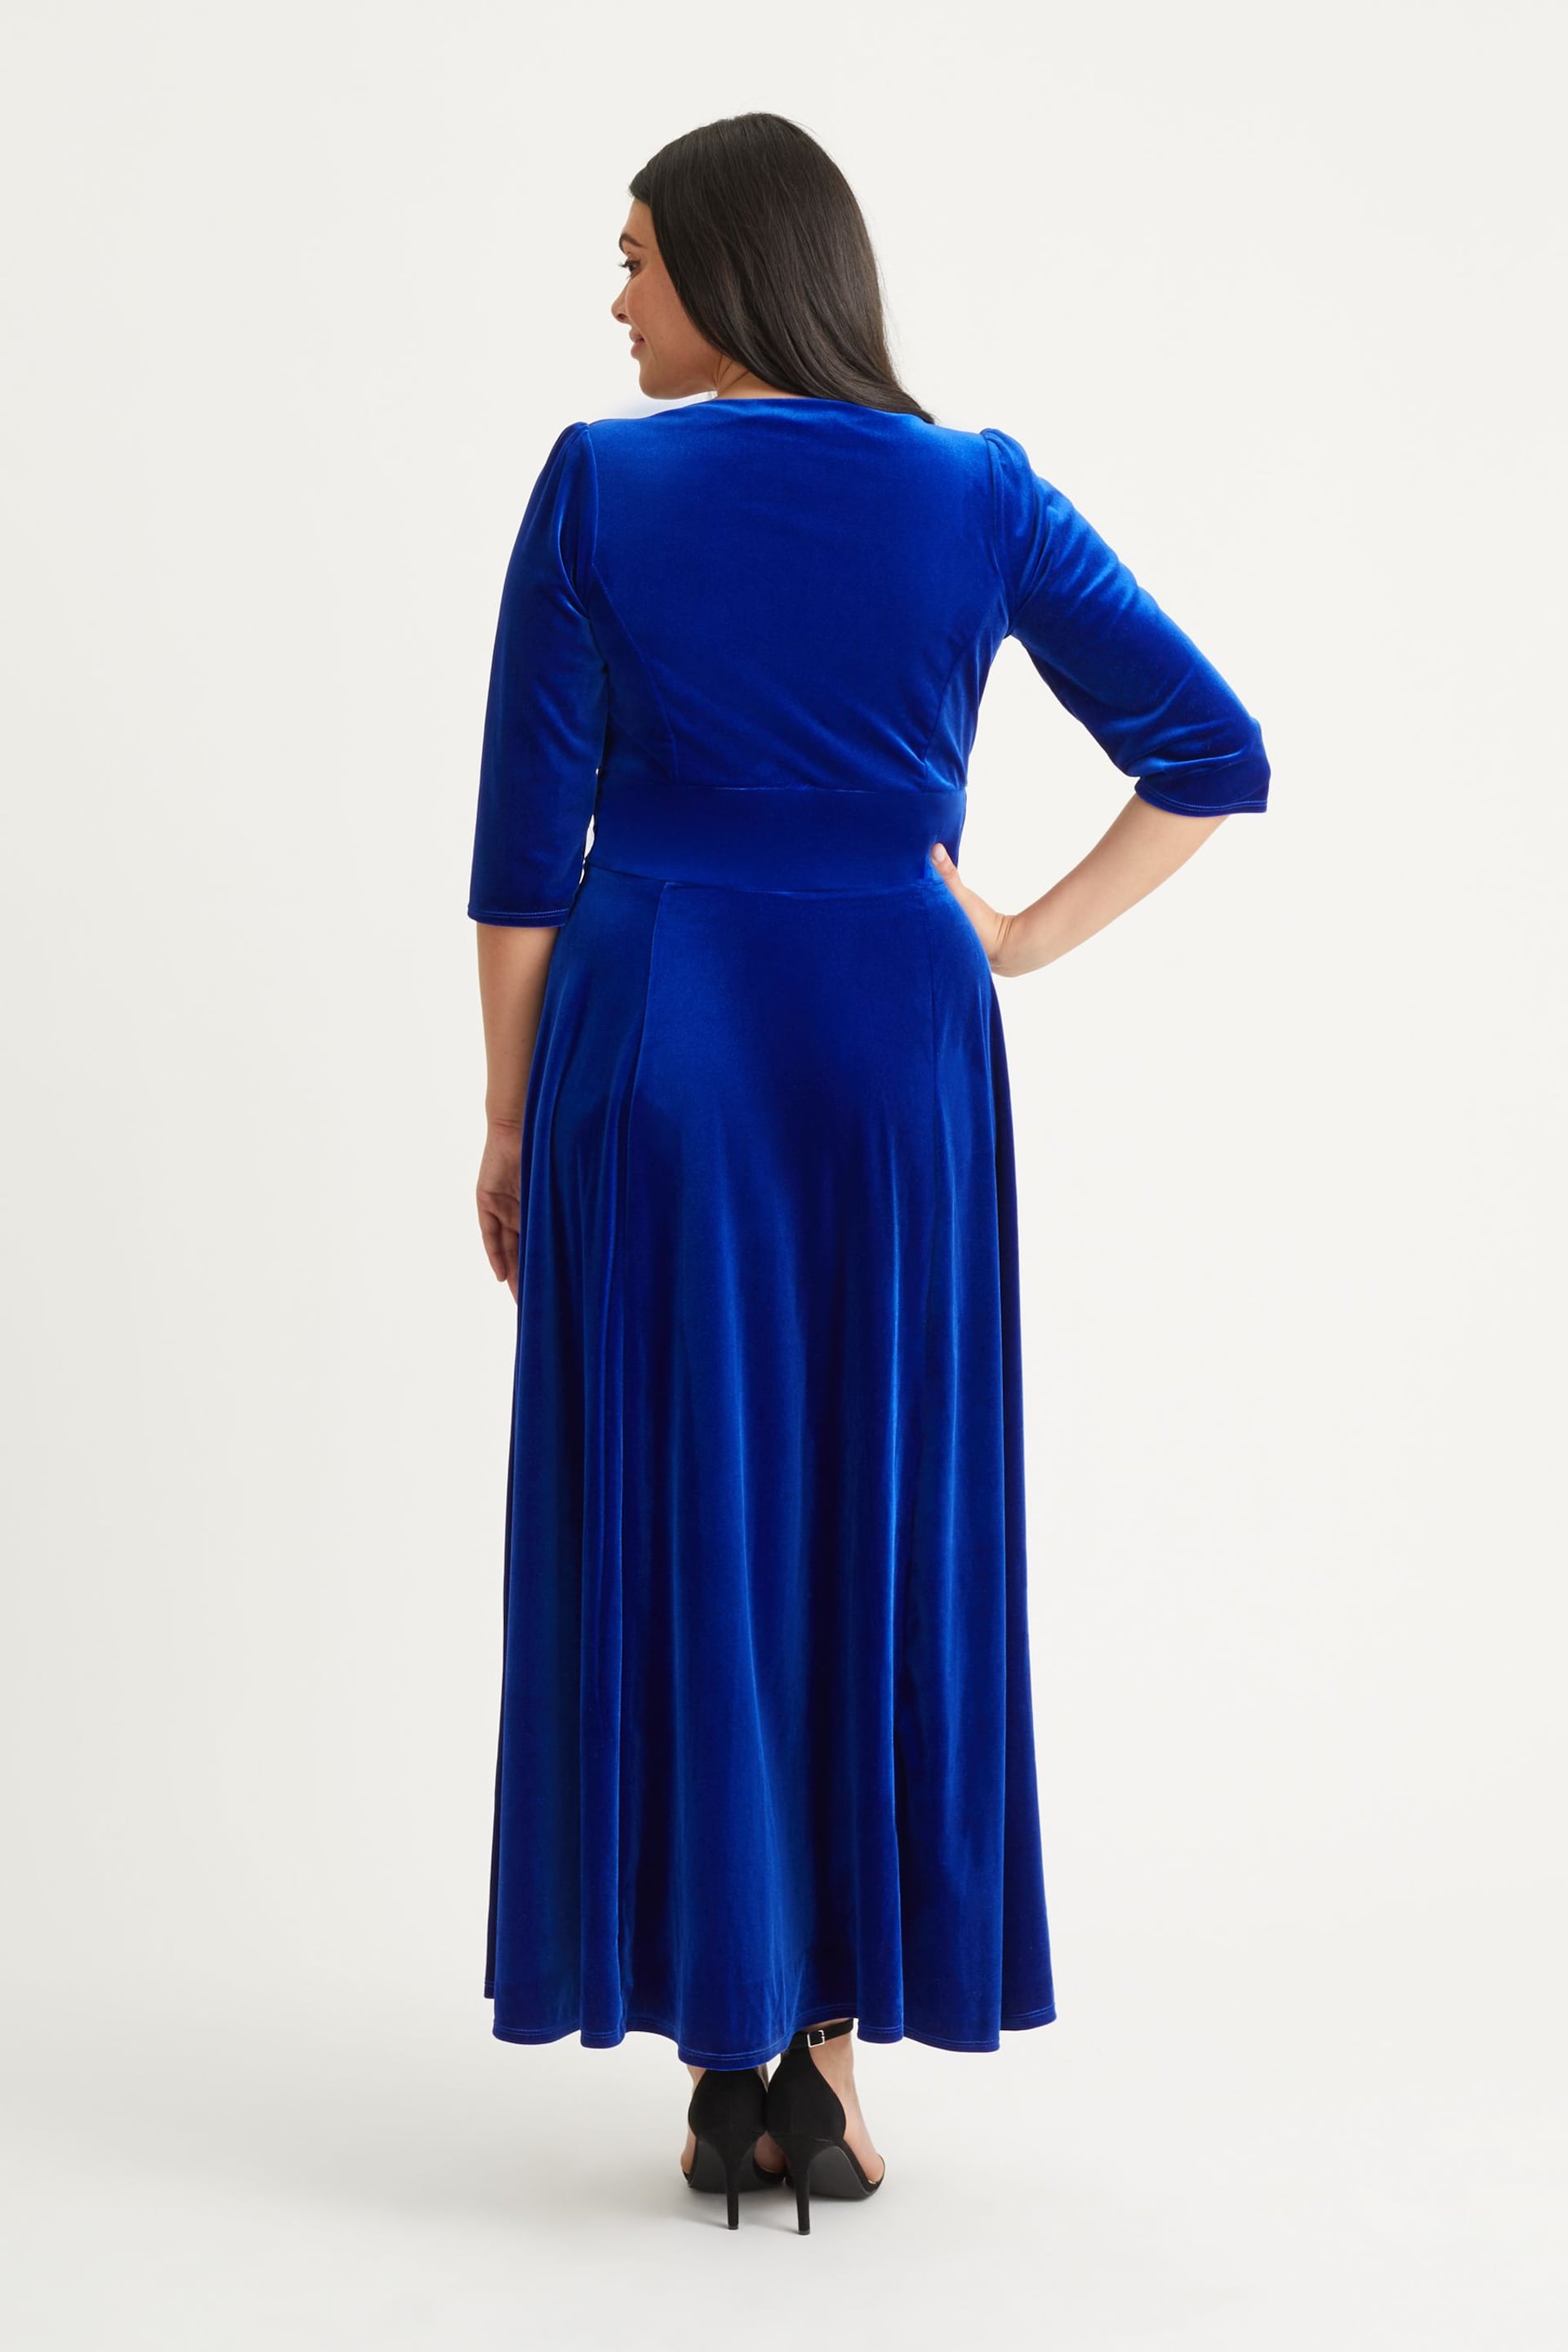 Scarlett & Jo Blue Verity Velvet Maxi Gown - Image 2 of 5